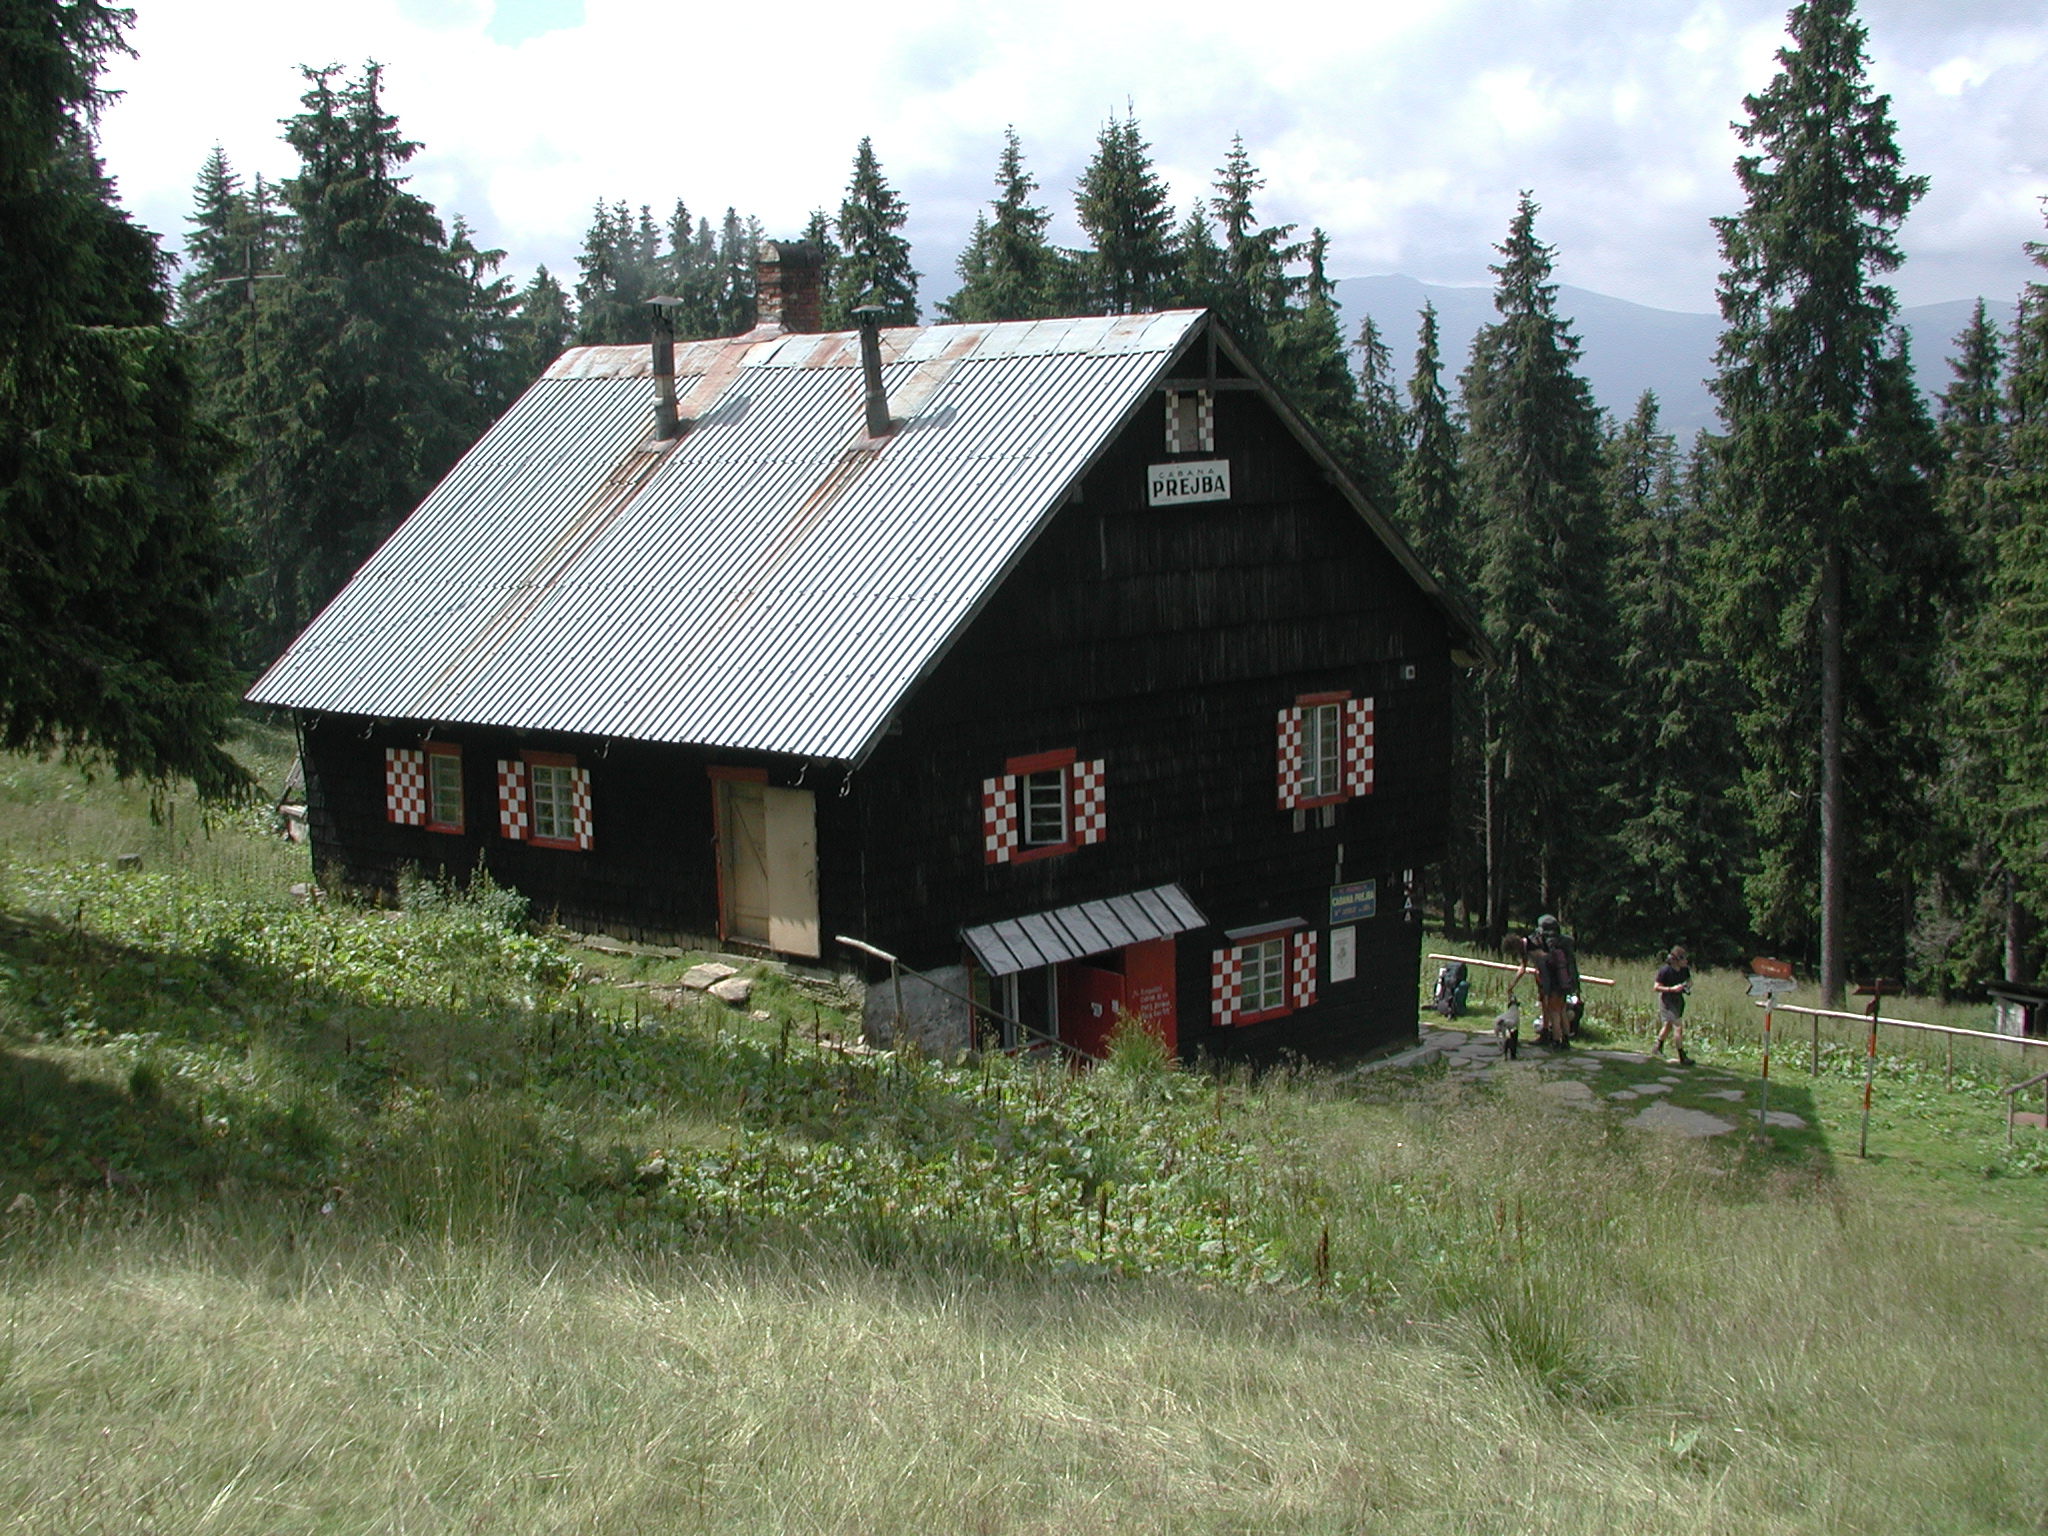 Munții Lotrului / Cabana Prejba. V roce 2004 už nefungovala jako horská chata, ale jako soukromá chatička.